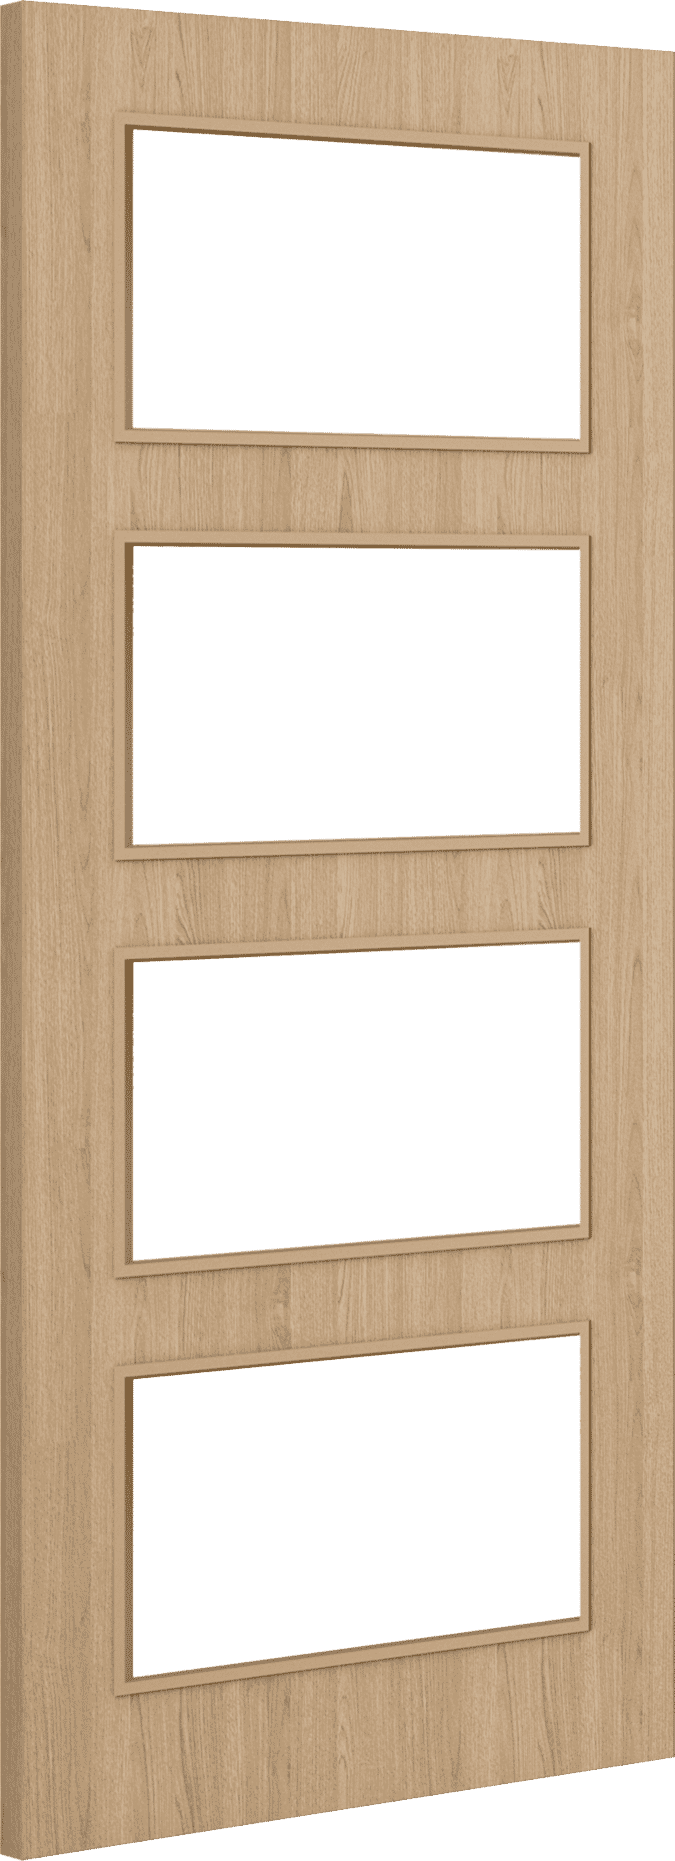 2040mm x 526mm x 44mm Architectural Oak 04 Clear Glazed - Prefinished FD30 Fire Door Blank